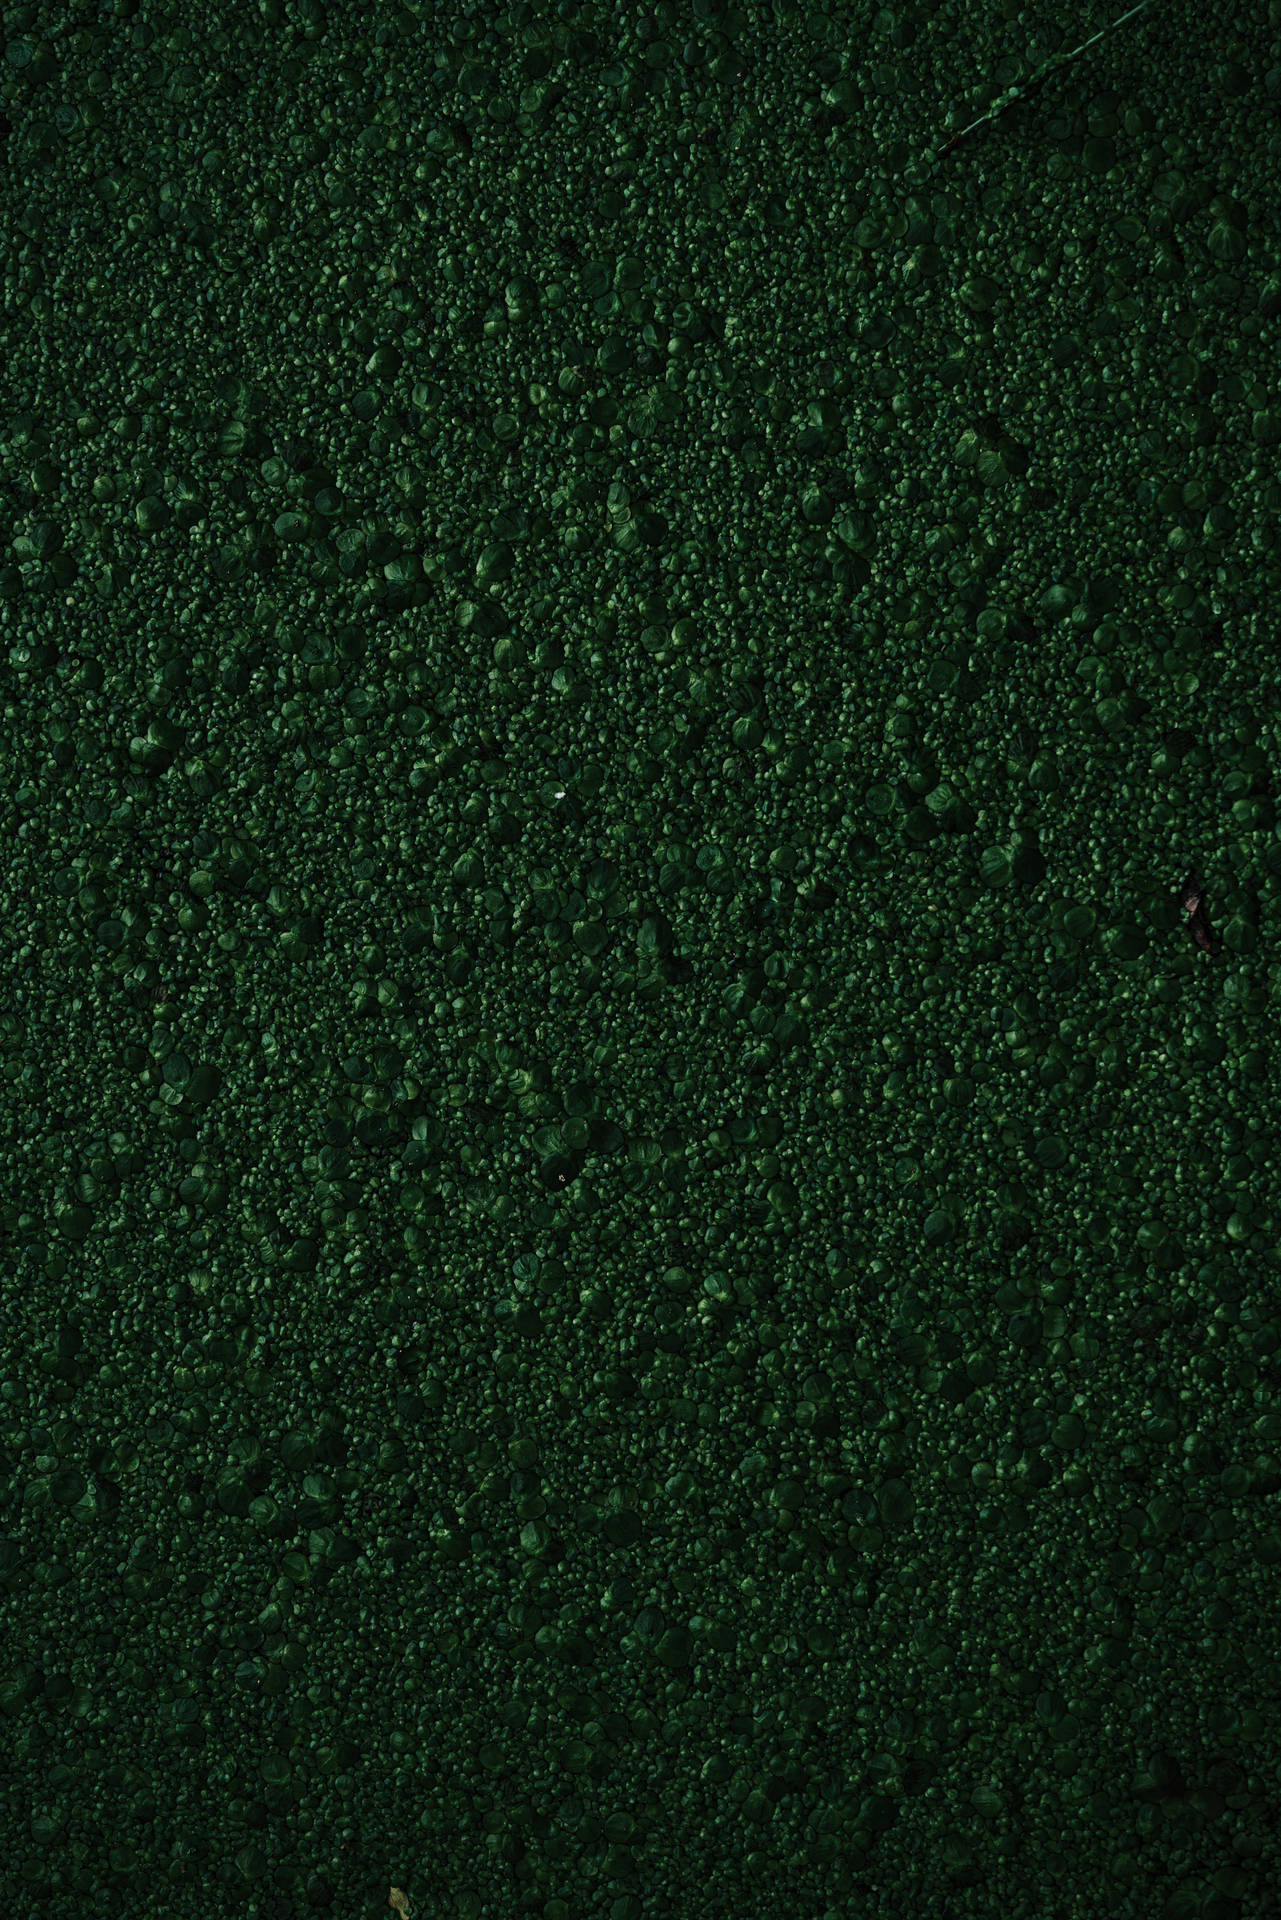 Texture Green Bumpy Moss Background